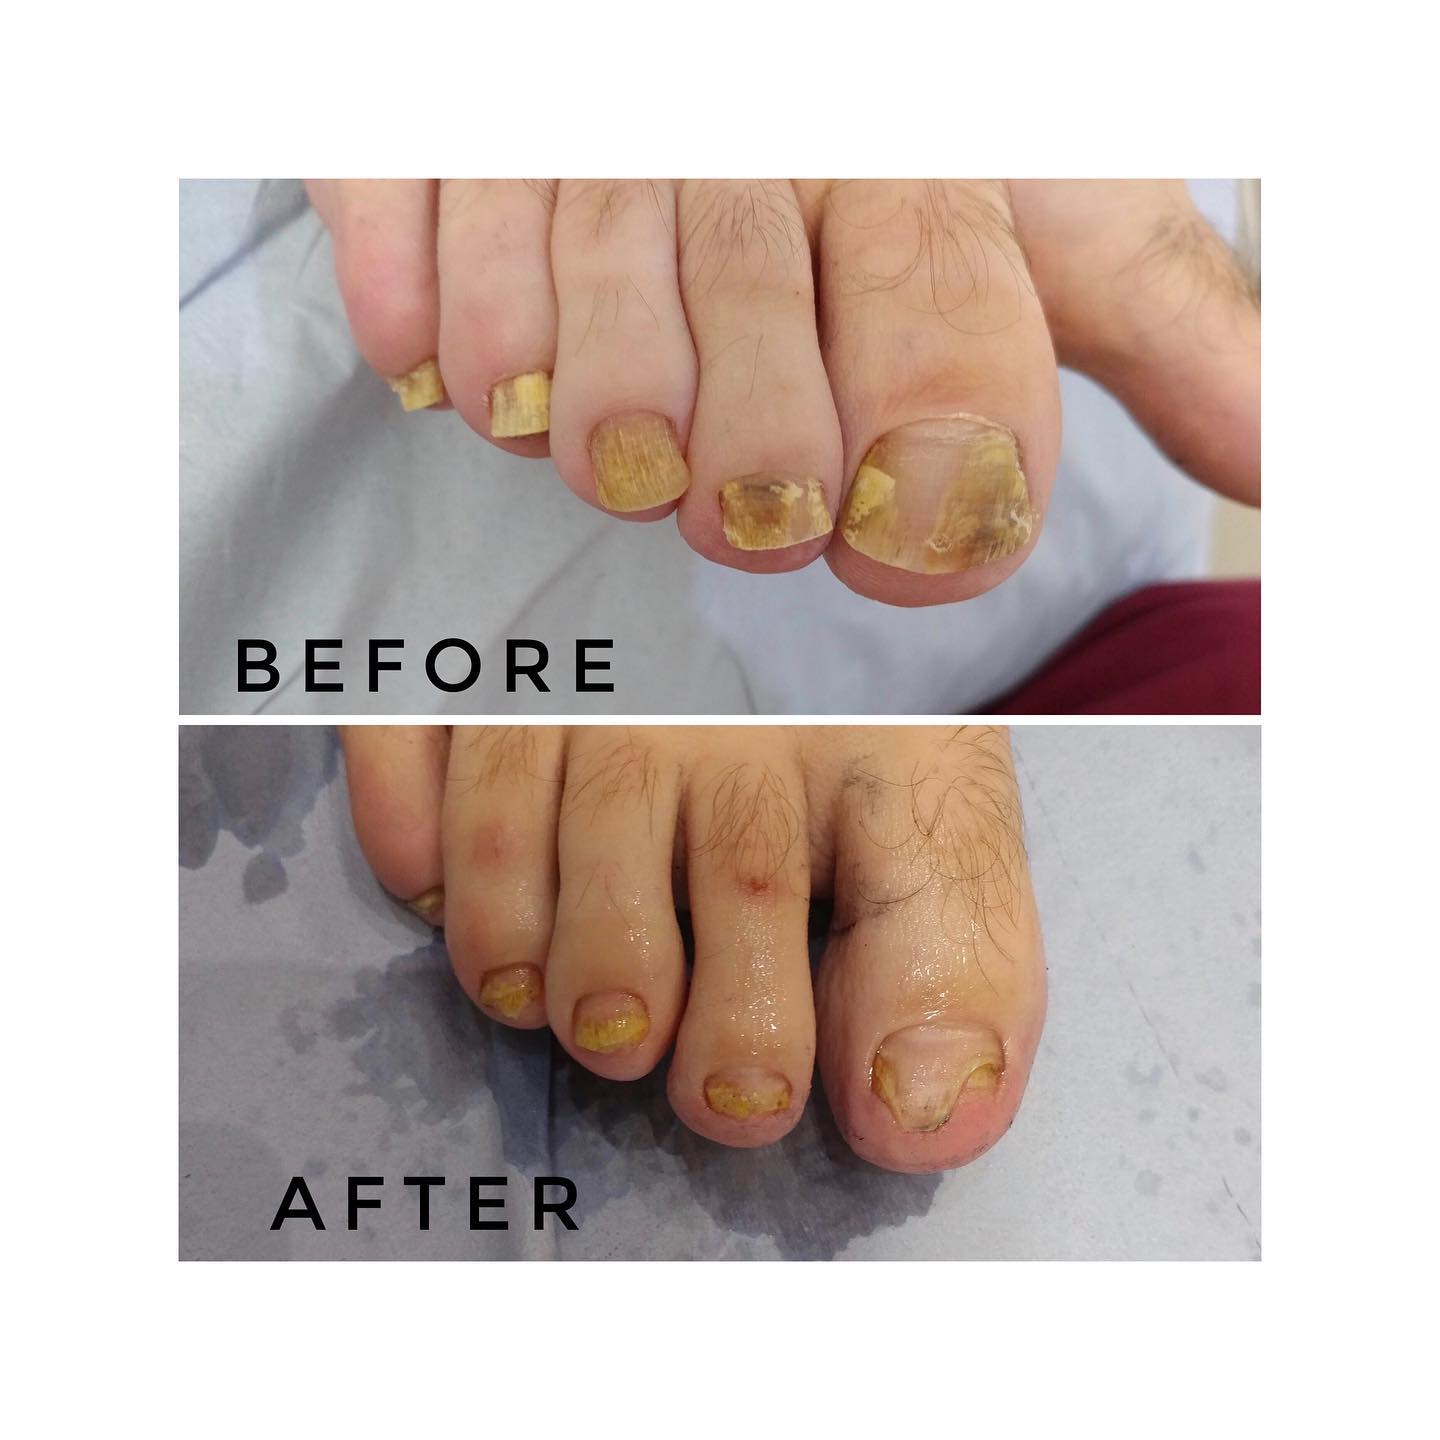 Harley Medical Foot and Nail Laser Clinic